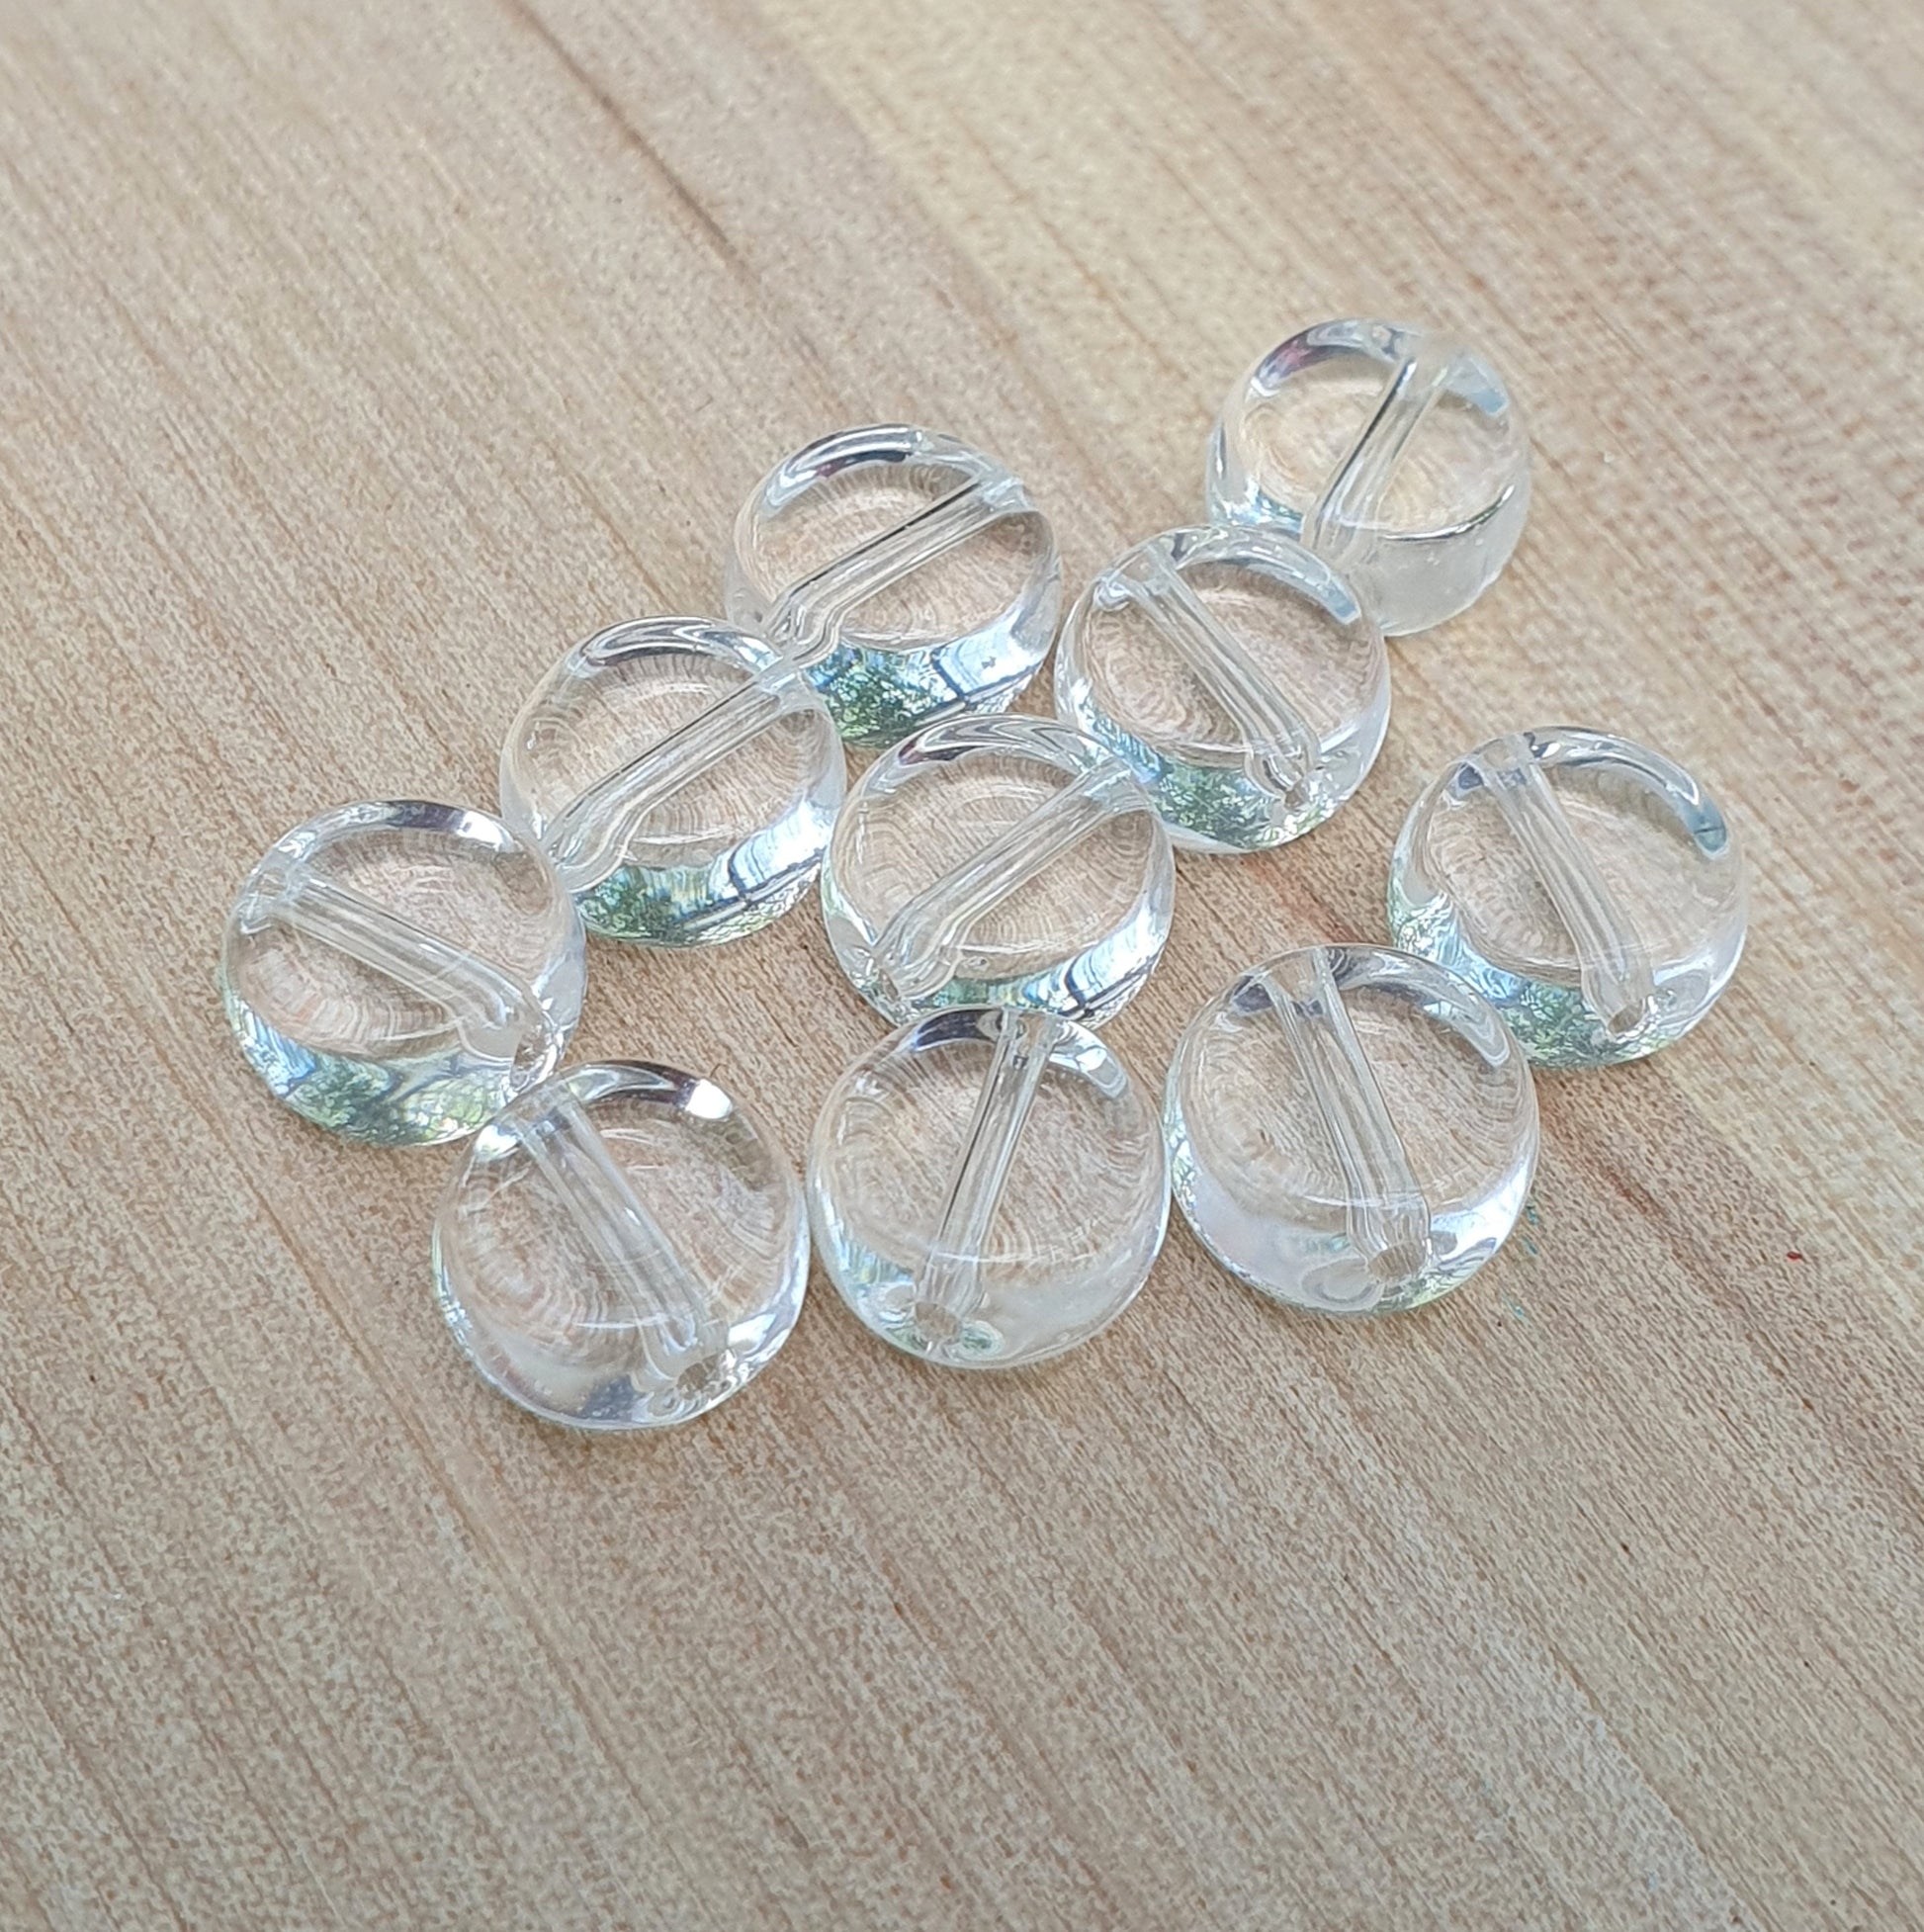 10 runde Glasperlen, Münze, transparent, 8mm Durchmesser, crystal